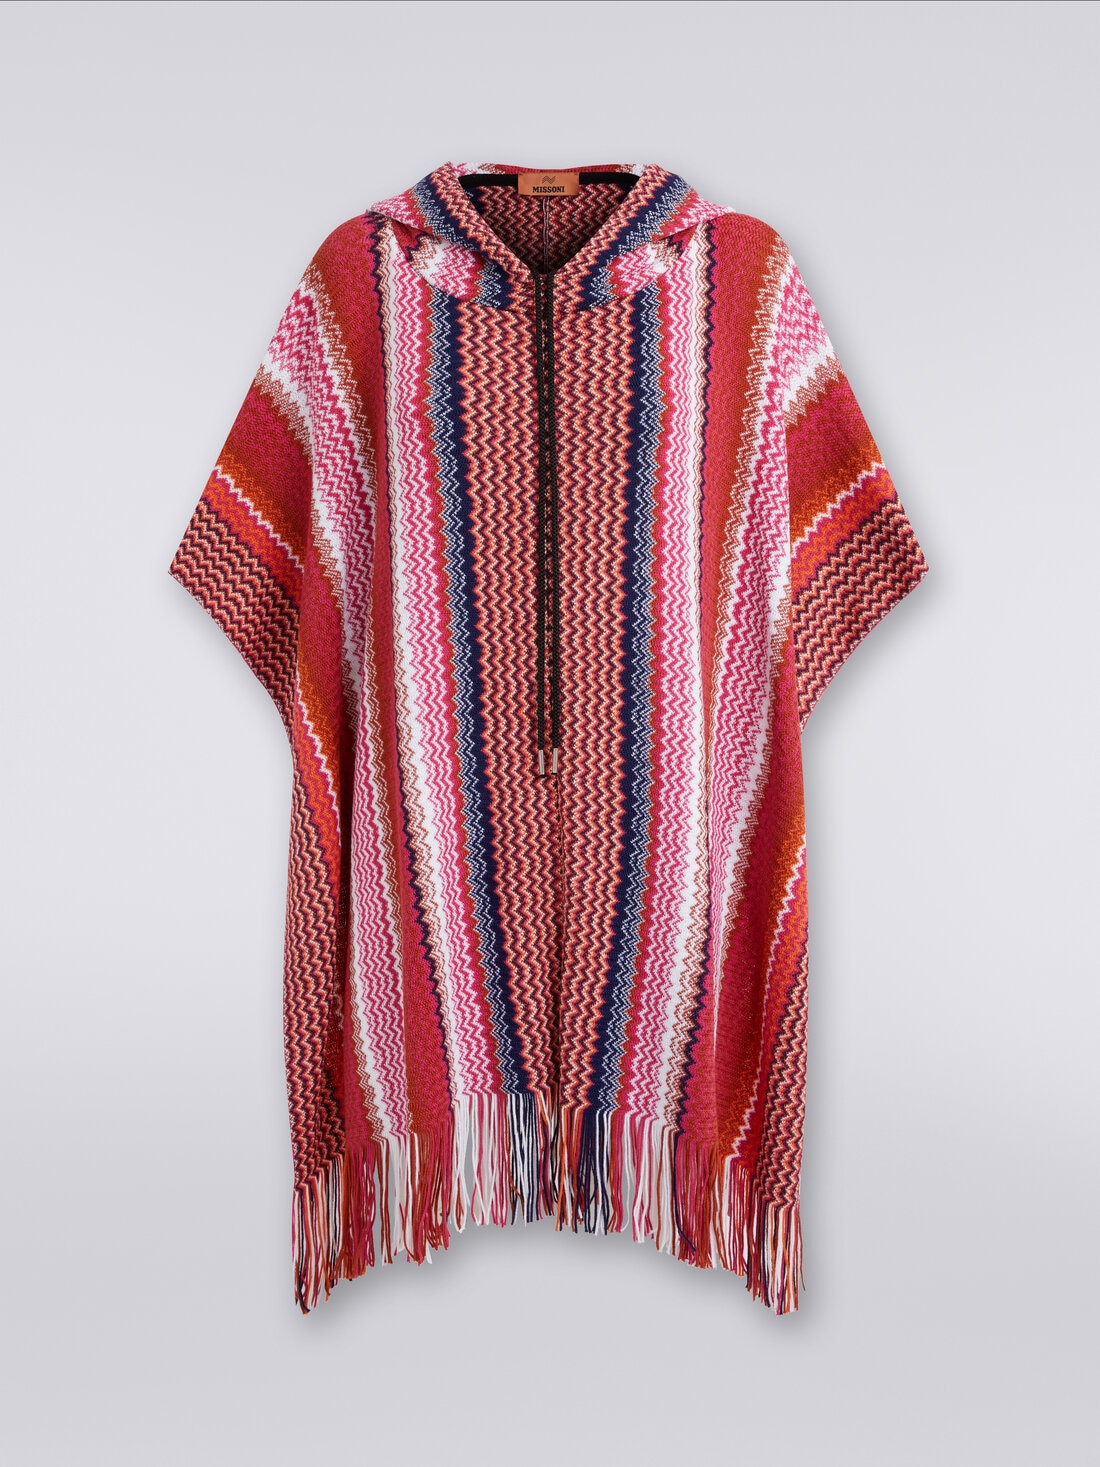 Poncho en mezcla de lana en zigzag con borde deshilachado, Multicolor  - 8053147023014 - 0